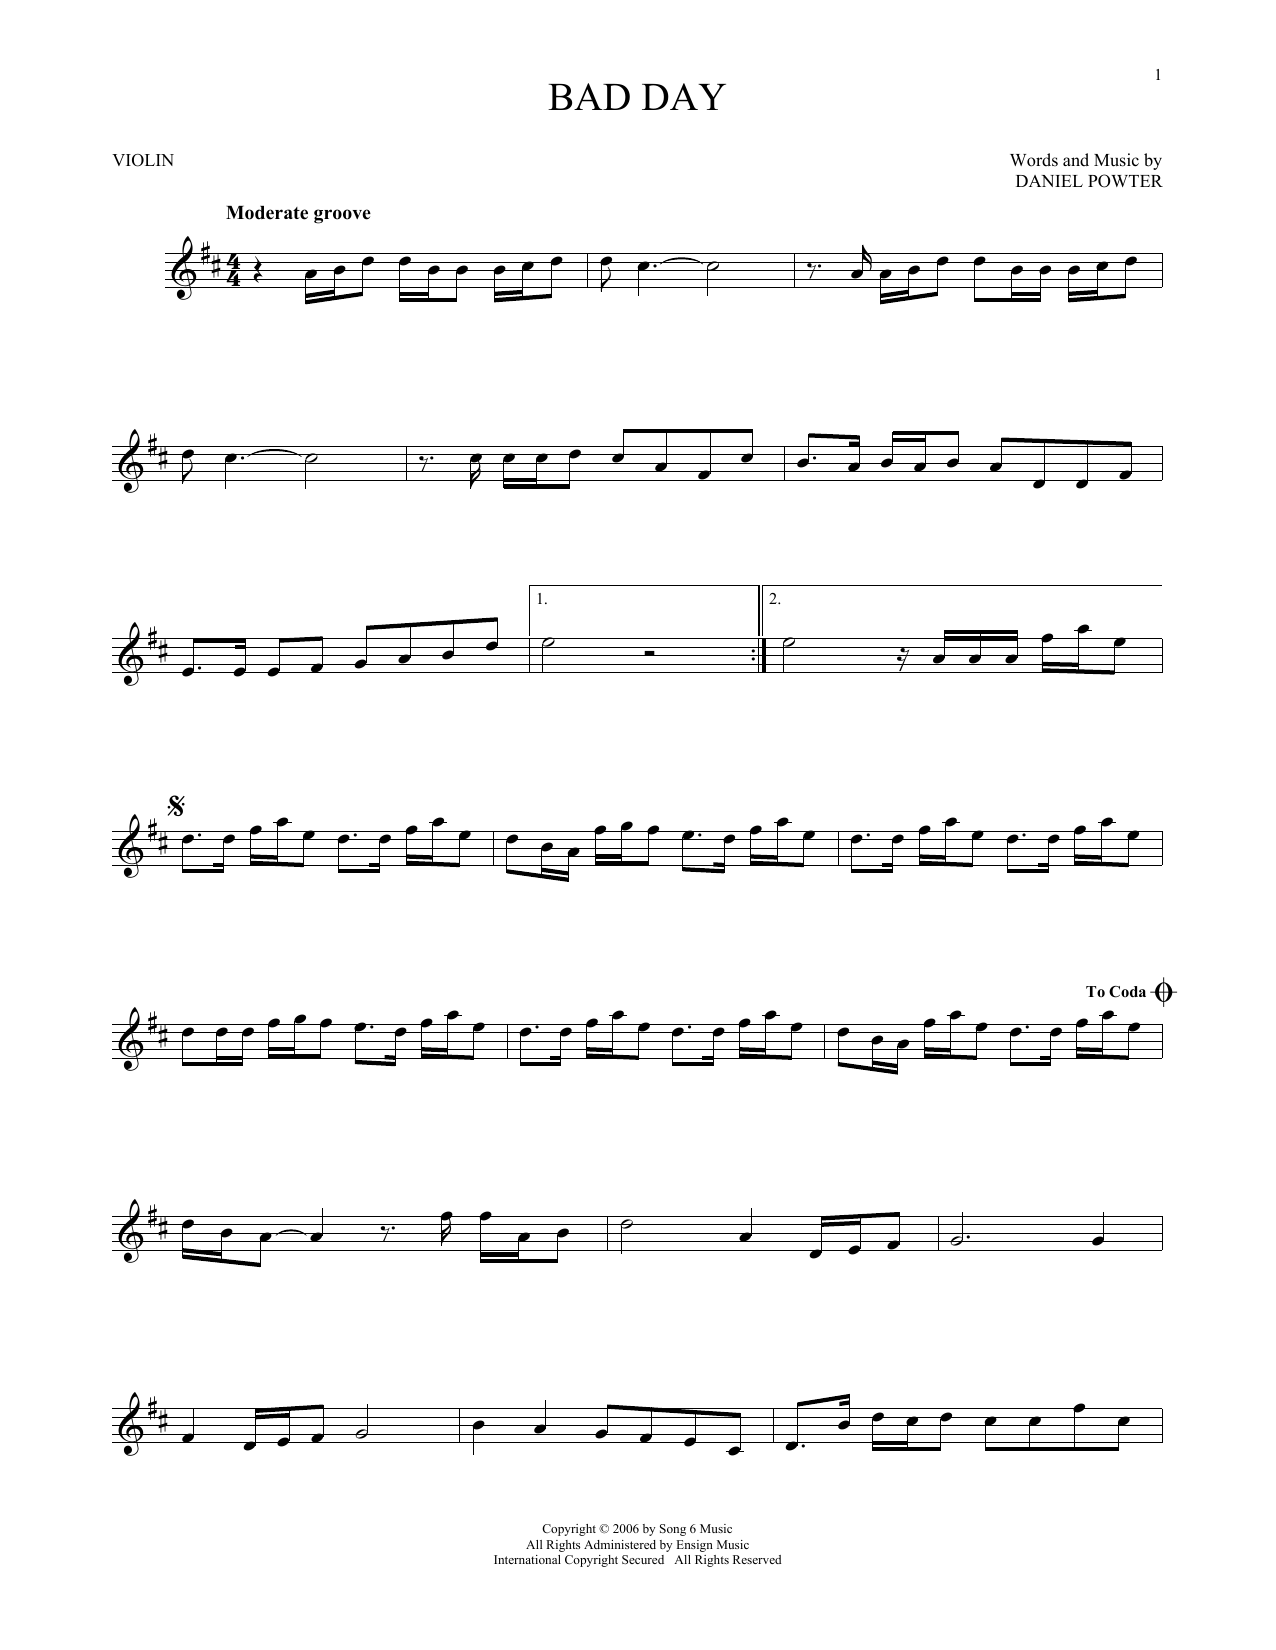 Daniel Powter Bad Day Sheet Music Notes Chords Download Rock Notes Violin Pdf Print